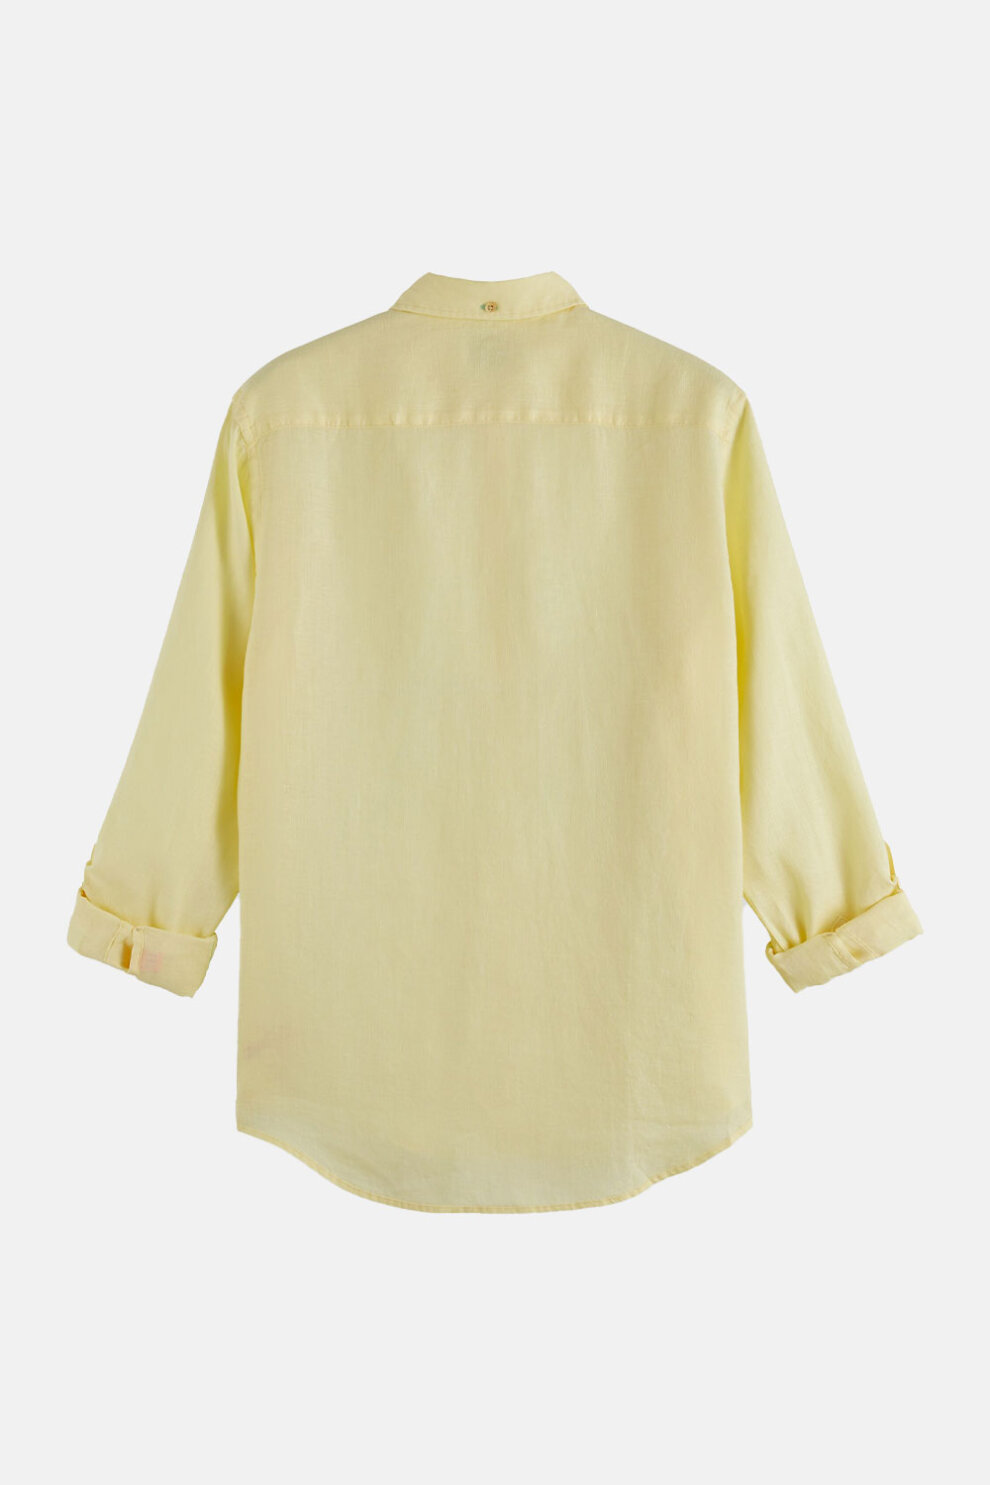 MUŠKARCI - Košulje - Scotch & Soda košulja - Dugi rukavi - Žuta